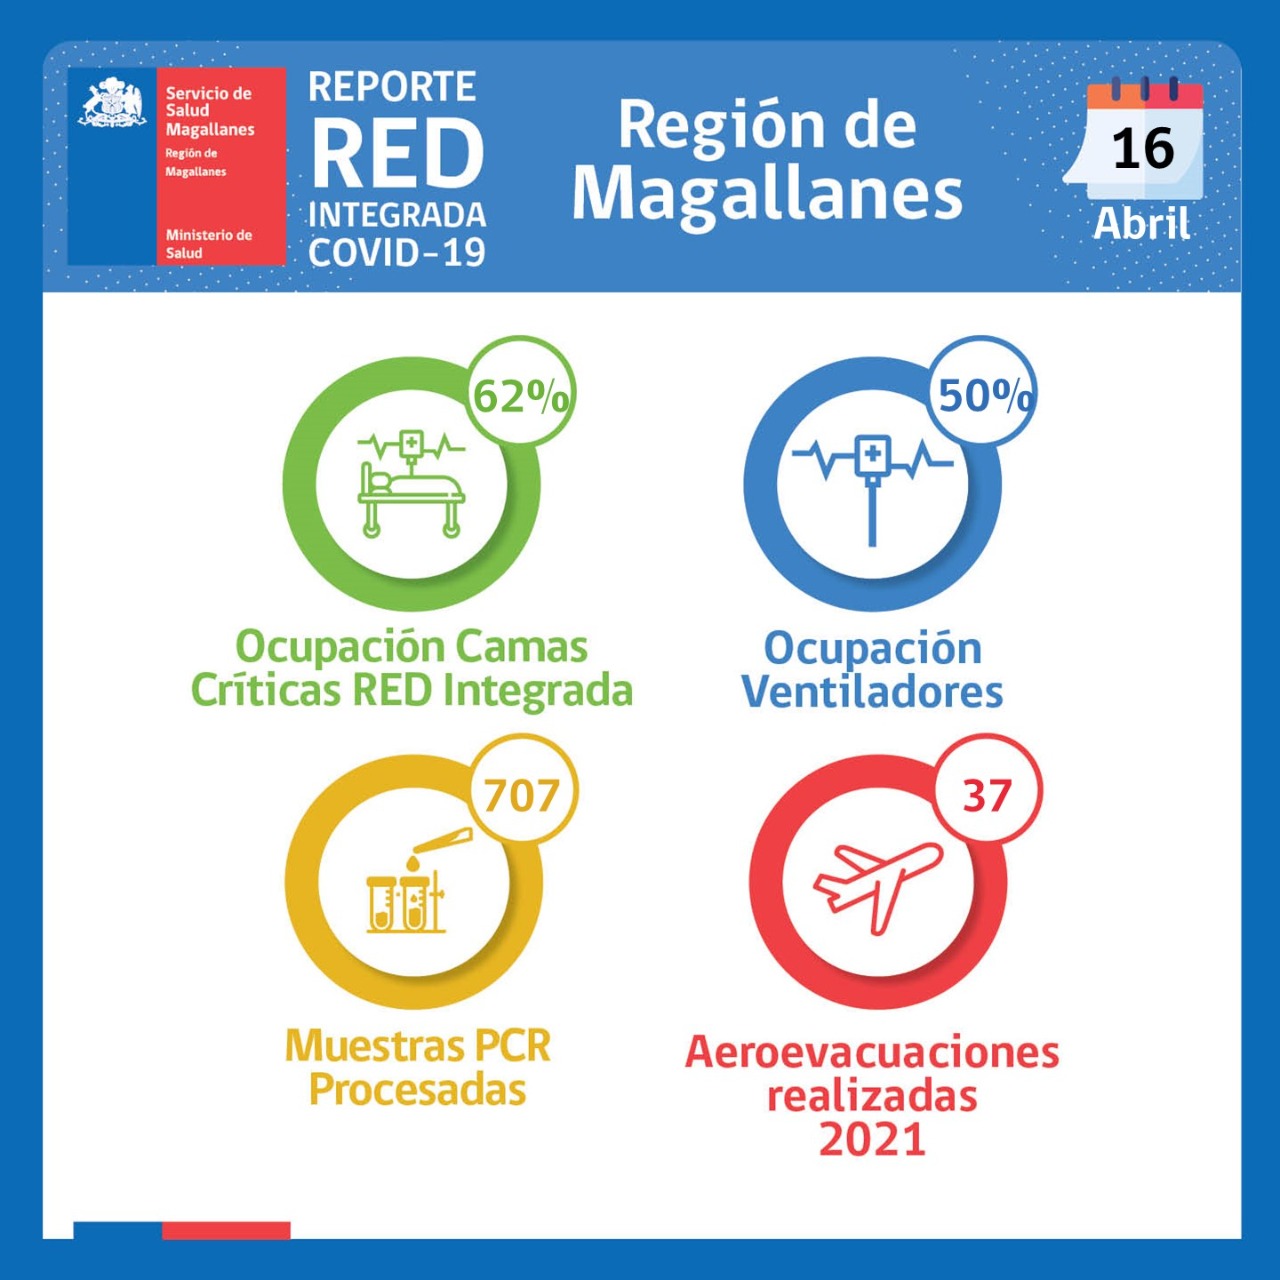 Situación de la red integrada covid19 en Magallanes, al viernes 16 de abril